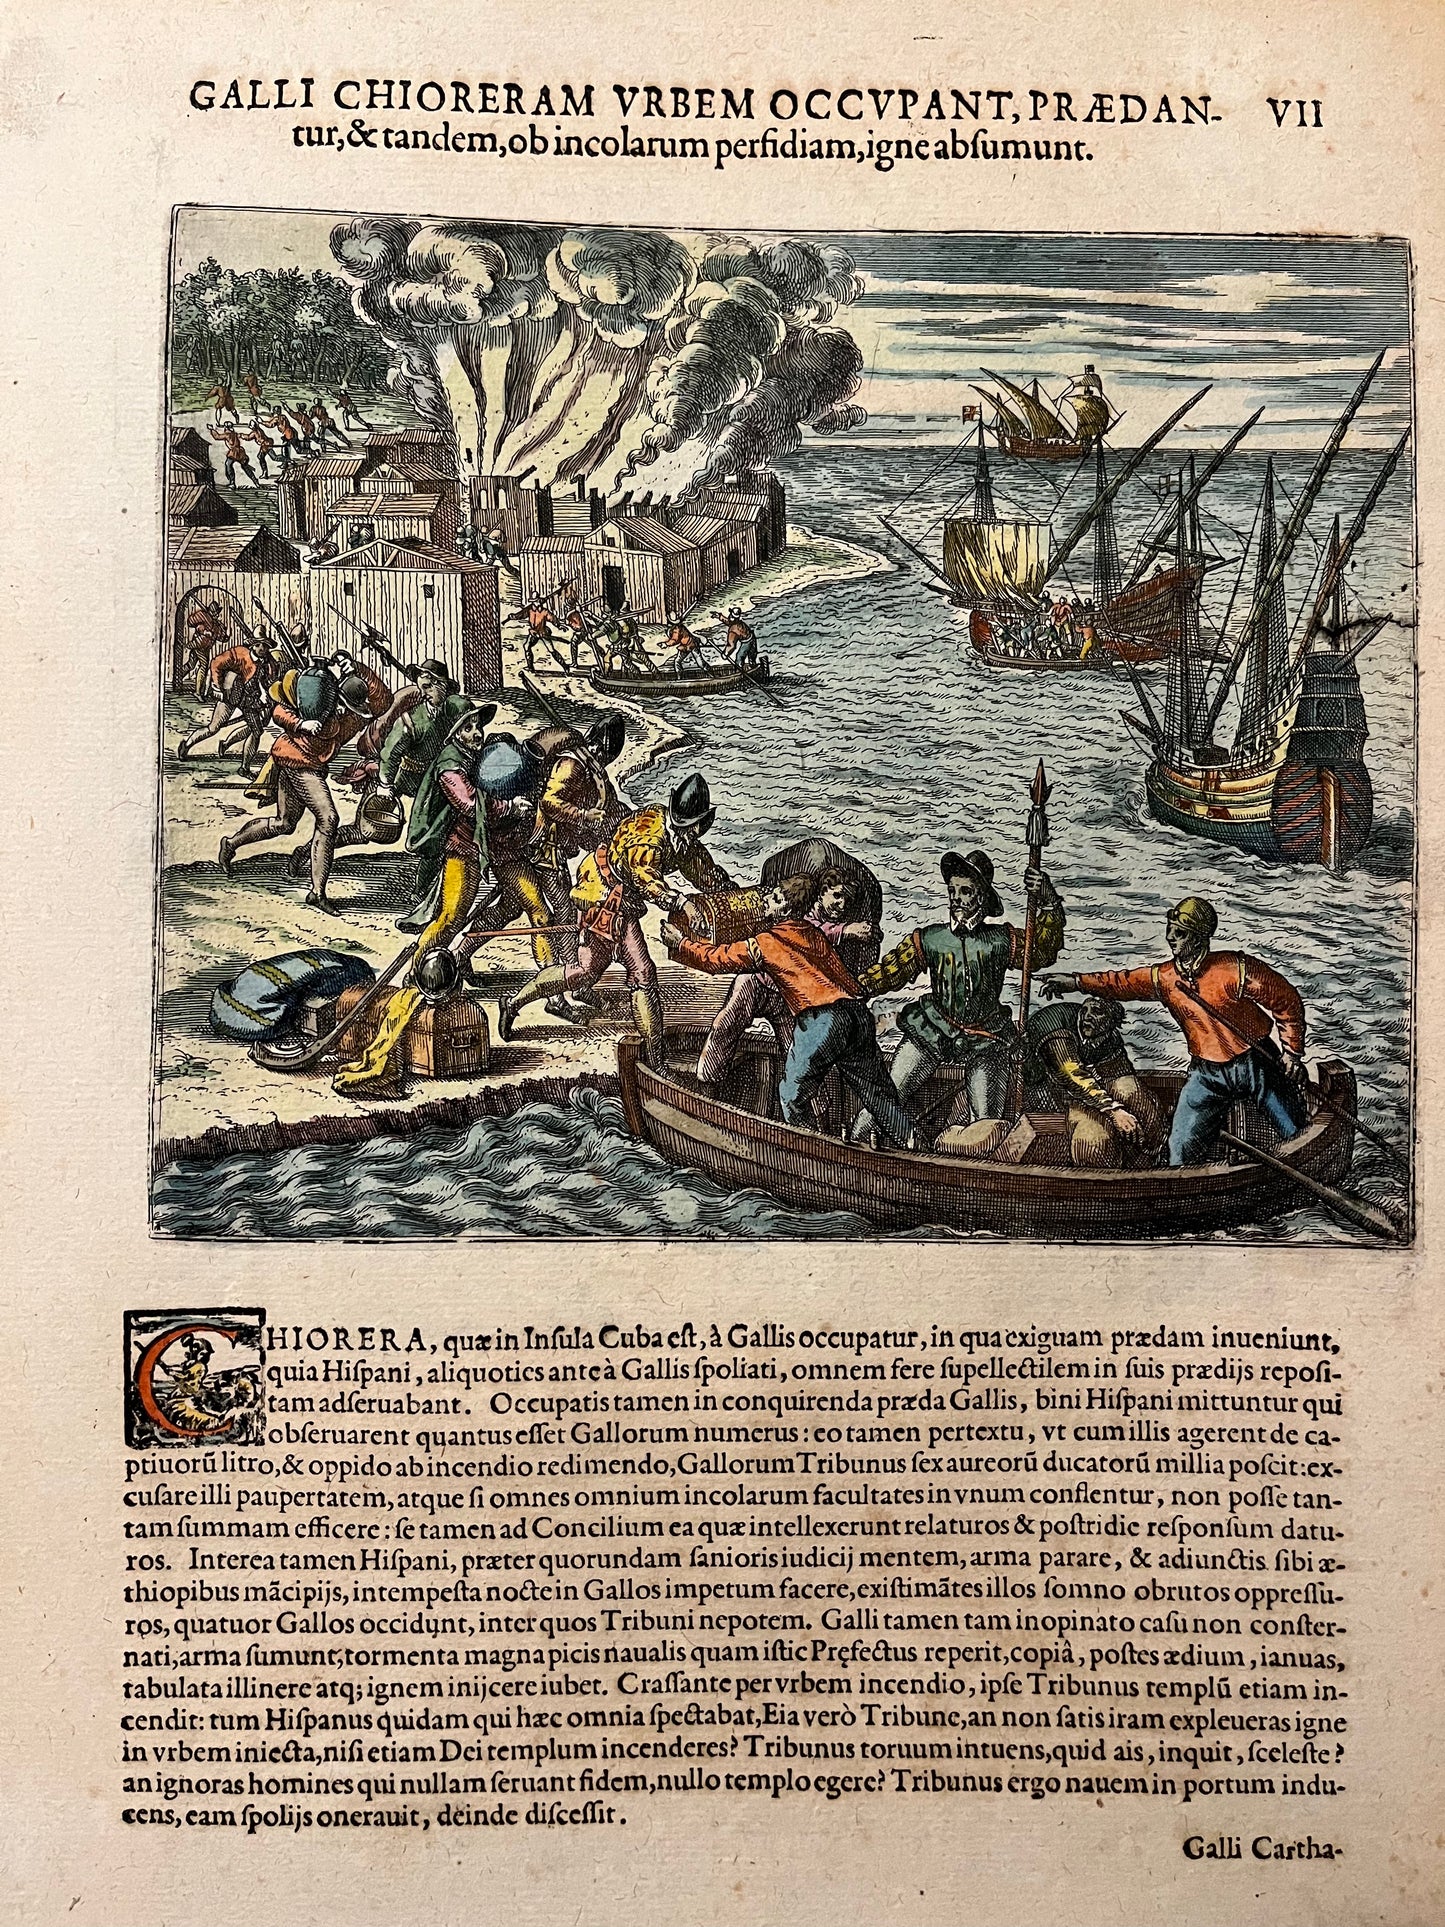 "Chorera in Cuba is burnt by the French" - de Bry - 1595